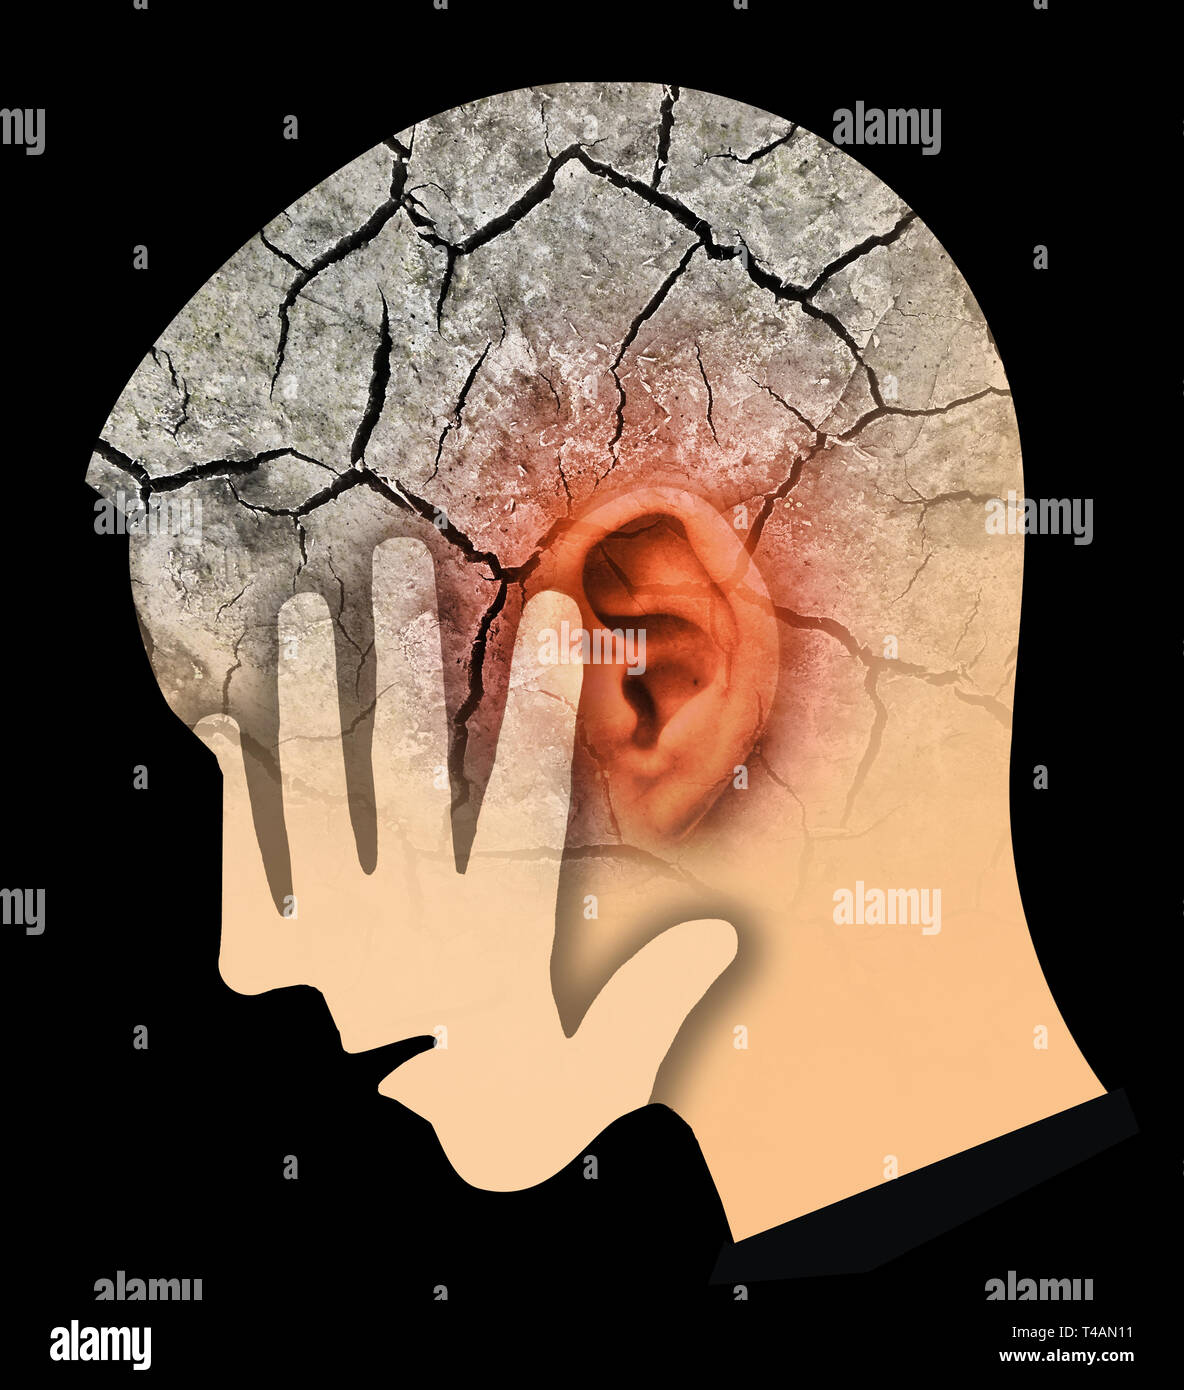 Uomo con big red incrinato orecchio e testa, che simboleggiano il tinnito e problemi alle orecchie. Testa maschio profilo stilizzato. Fotomontaggio a secco con massa rotto. Foto Stock